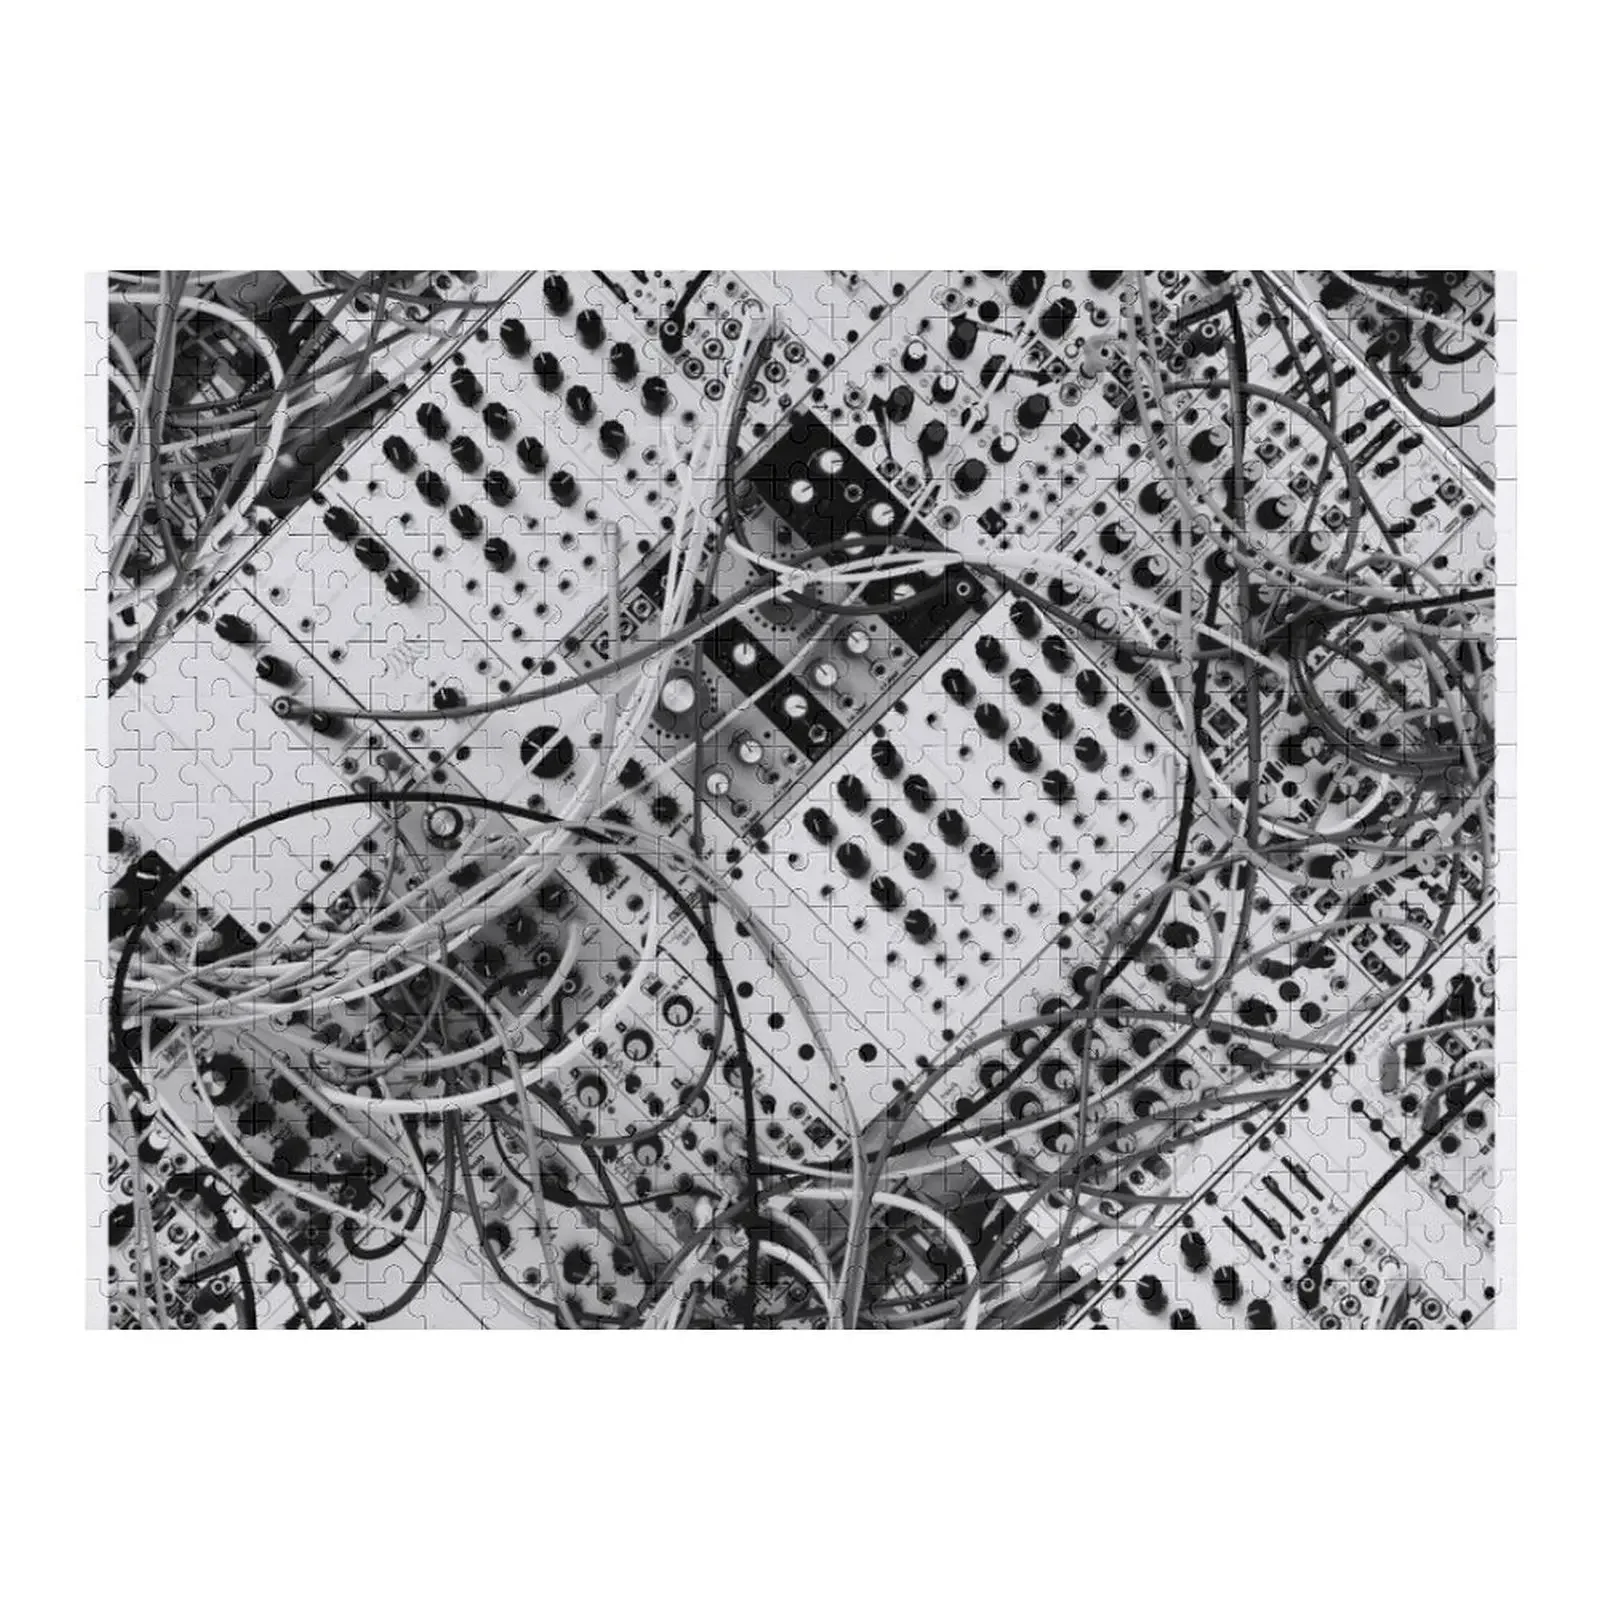 analog synthesizer - diagonal black and white illustration Jigsaw Puzzle Custom Jigsaw Personalized Puzzle